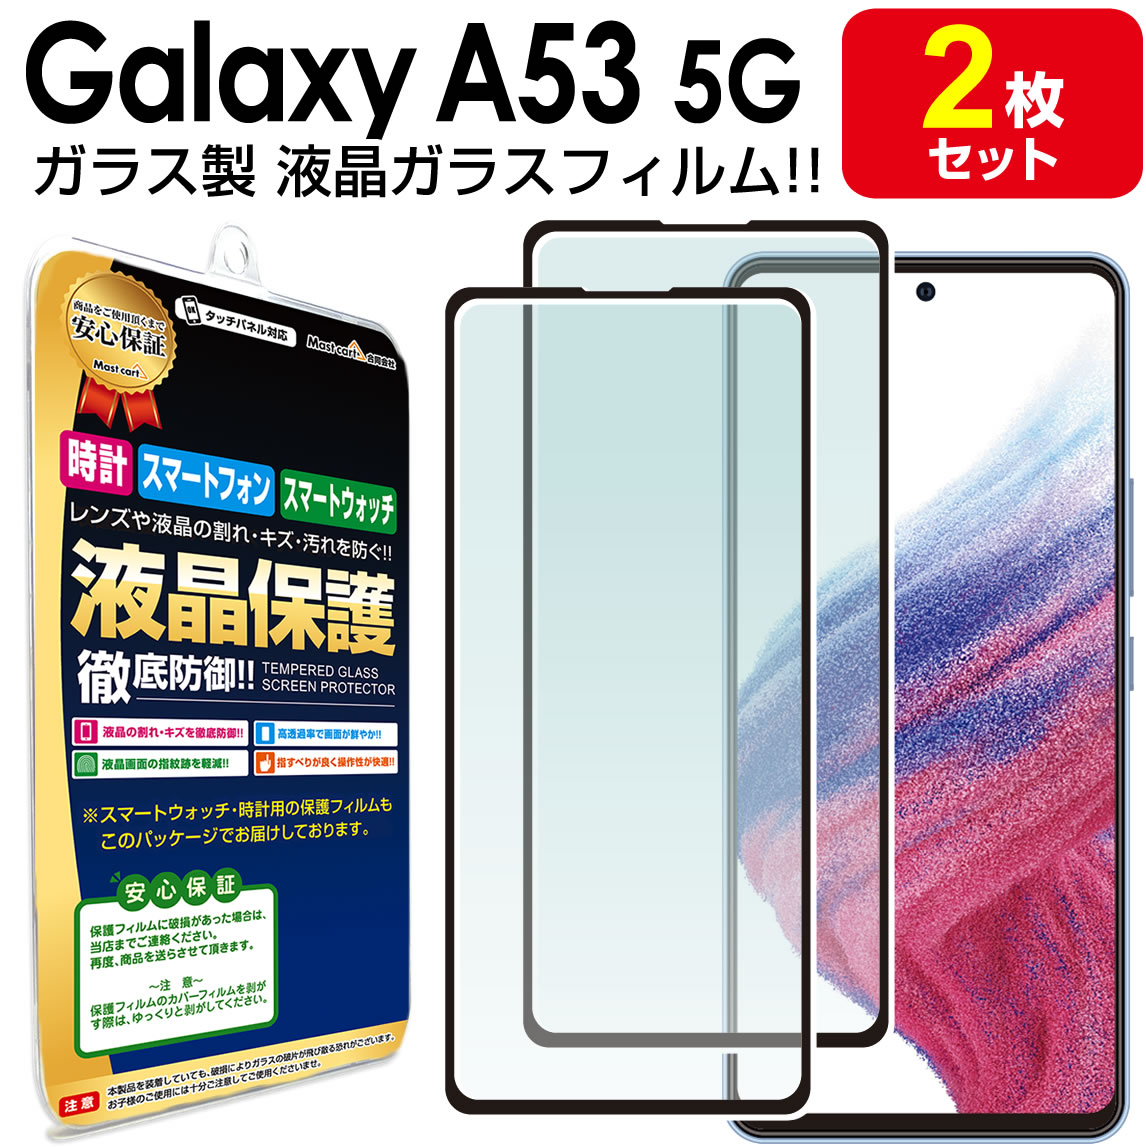 楽天 Galaxy A53 5G ソフトクリアース+画面保護フィルムセット